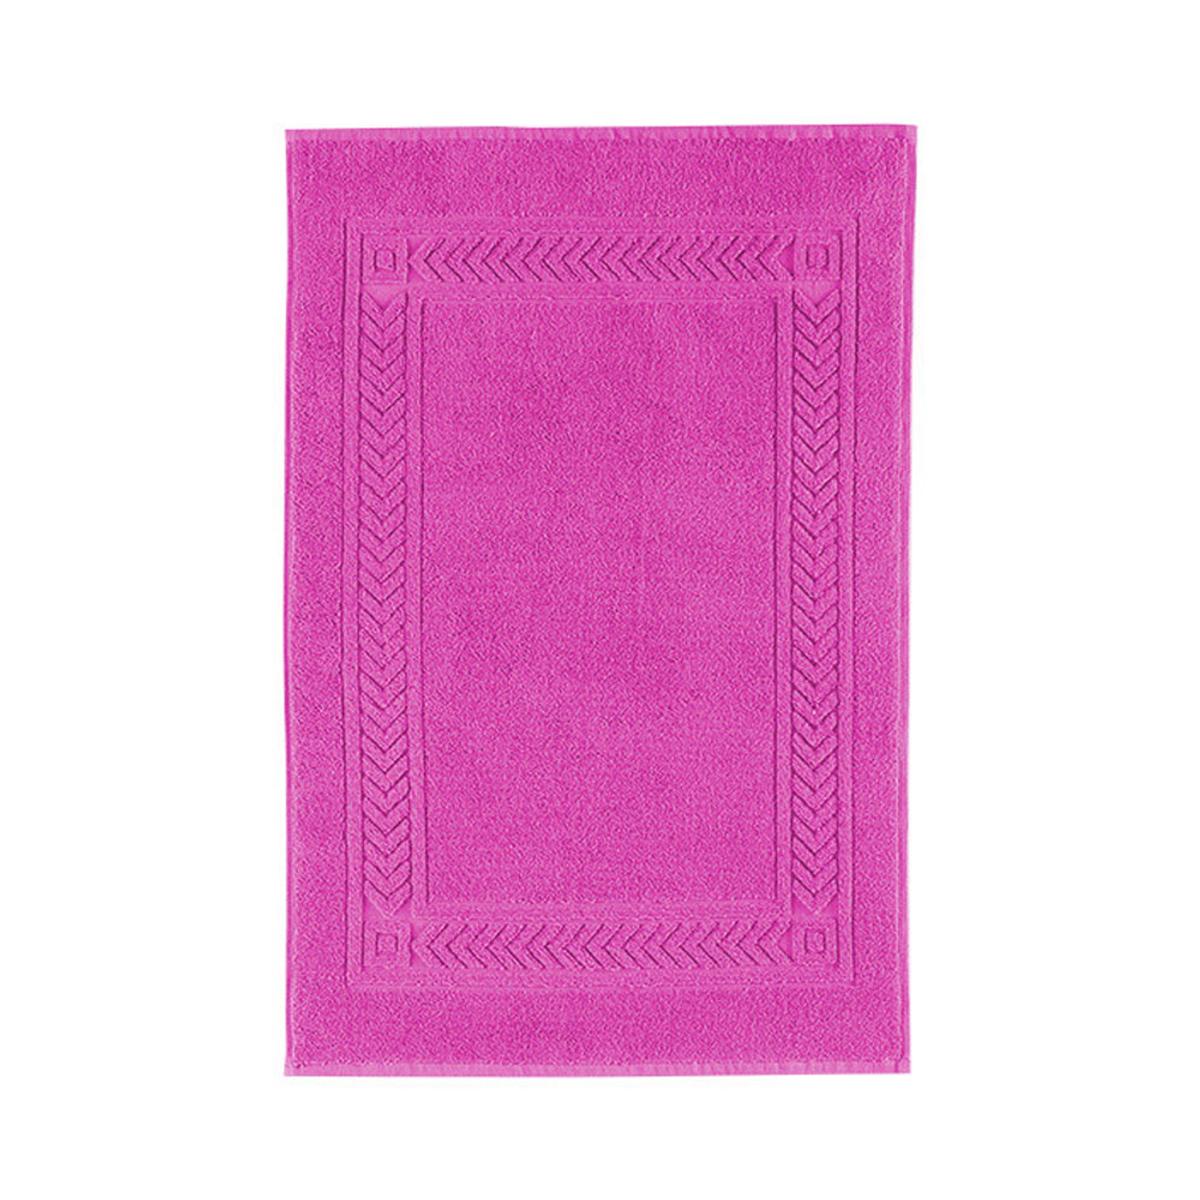 Ręcznik Imperial Trend 041 /różowy ESTELLA ATELIERS - 4